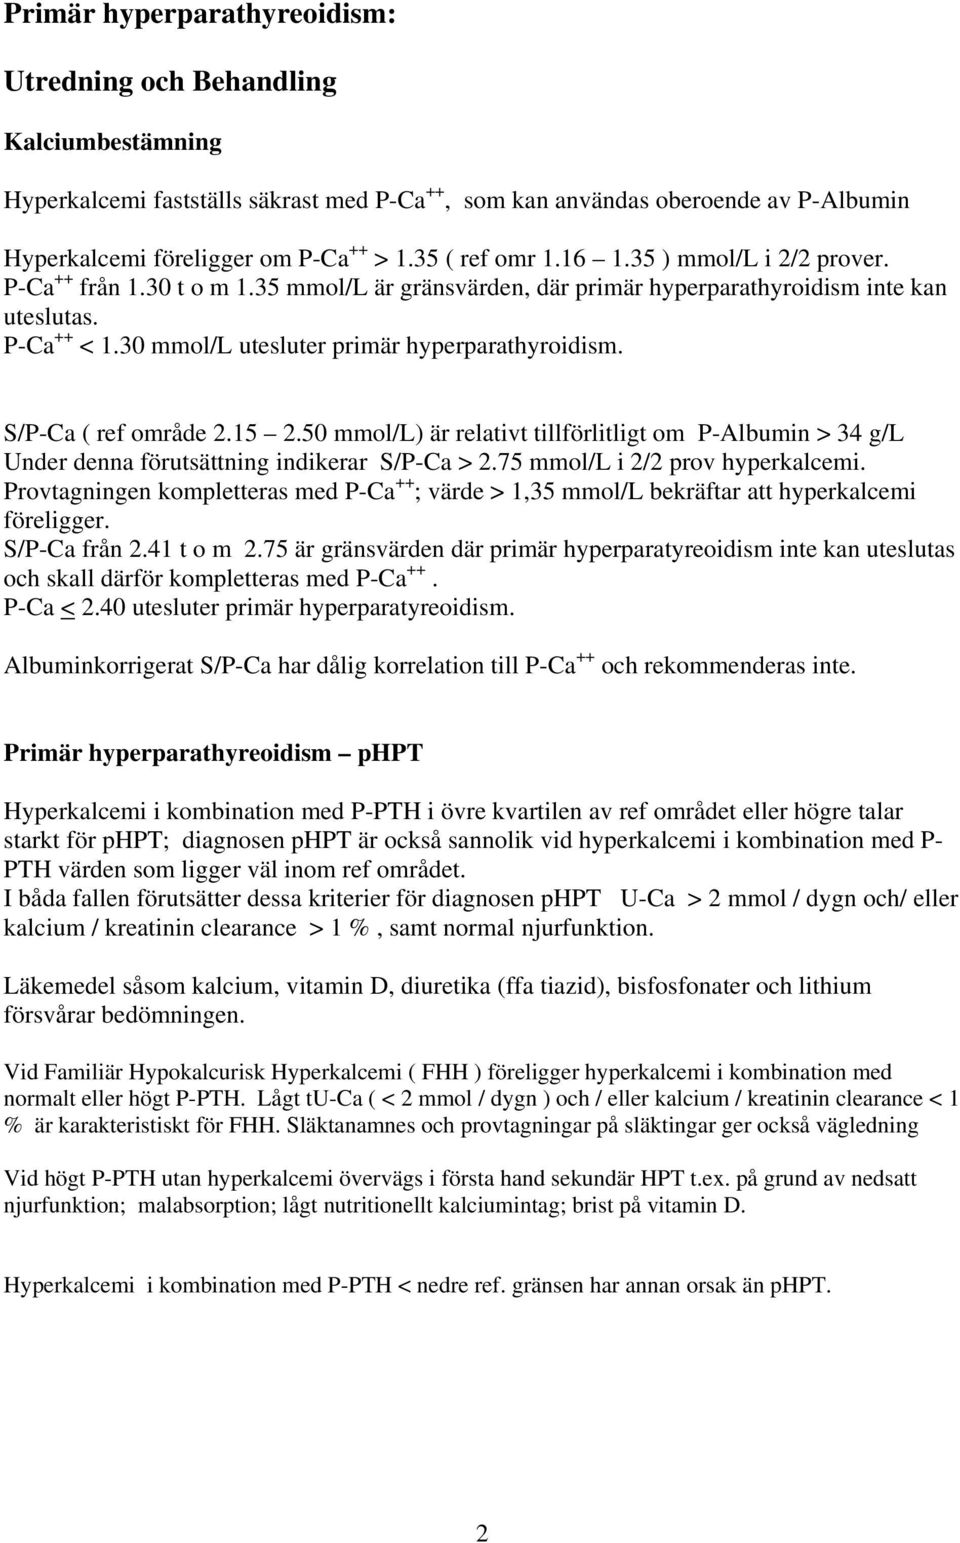 30 mmol/l utesluter primär hyperparathyroidism. S/P-Ca ( ref område 2.15 2.50 mmol/l) är relativt tillförlitligt om P-Albumin > 34 g/l Under denna förutsättning indikerar S/P-Ca > 2.